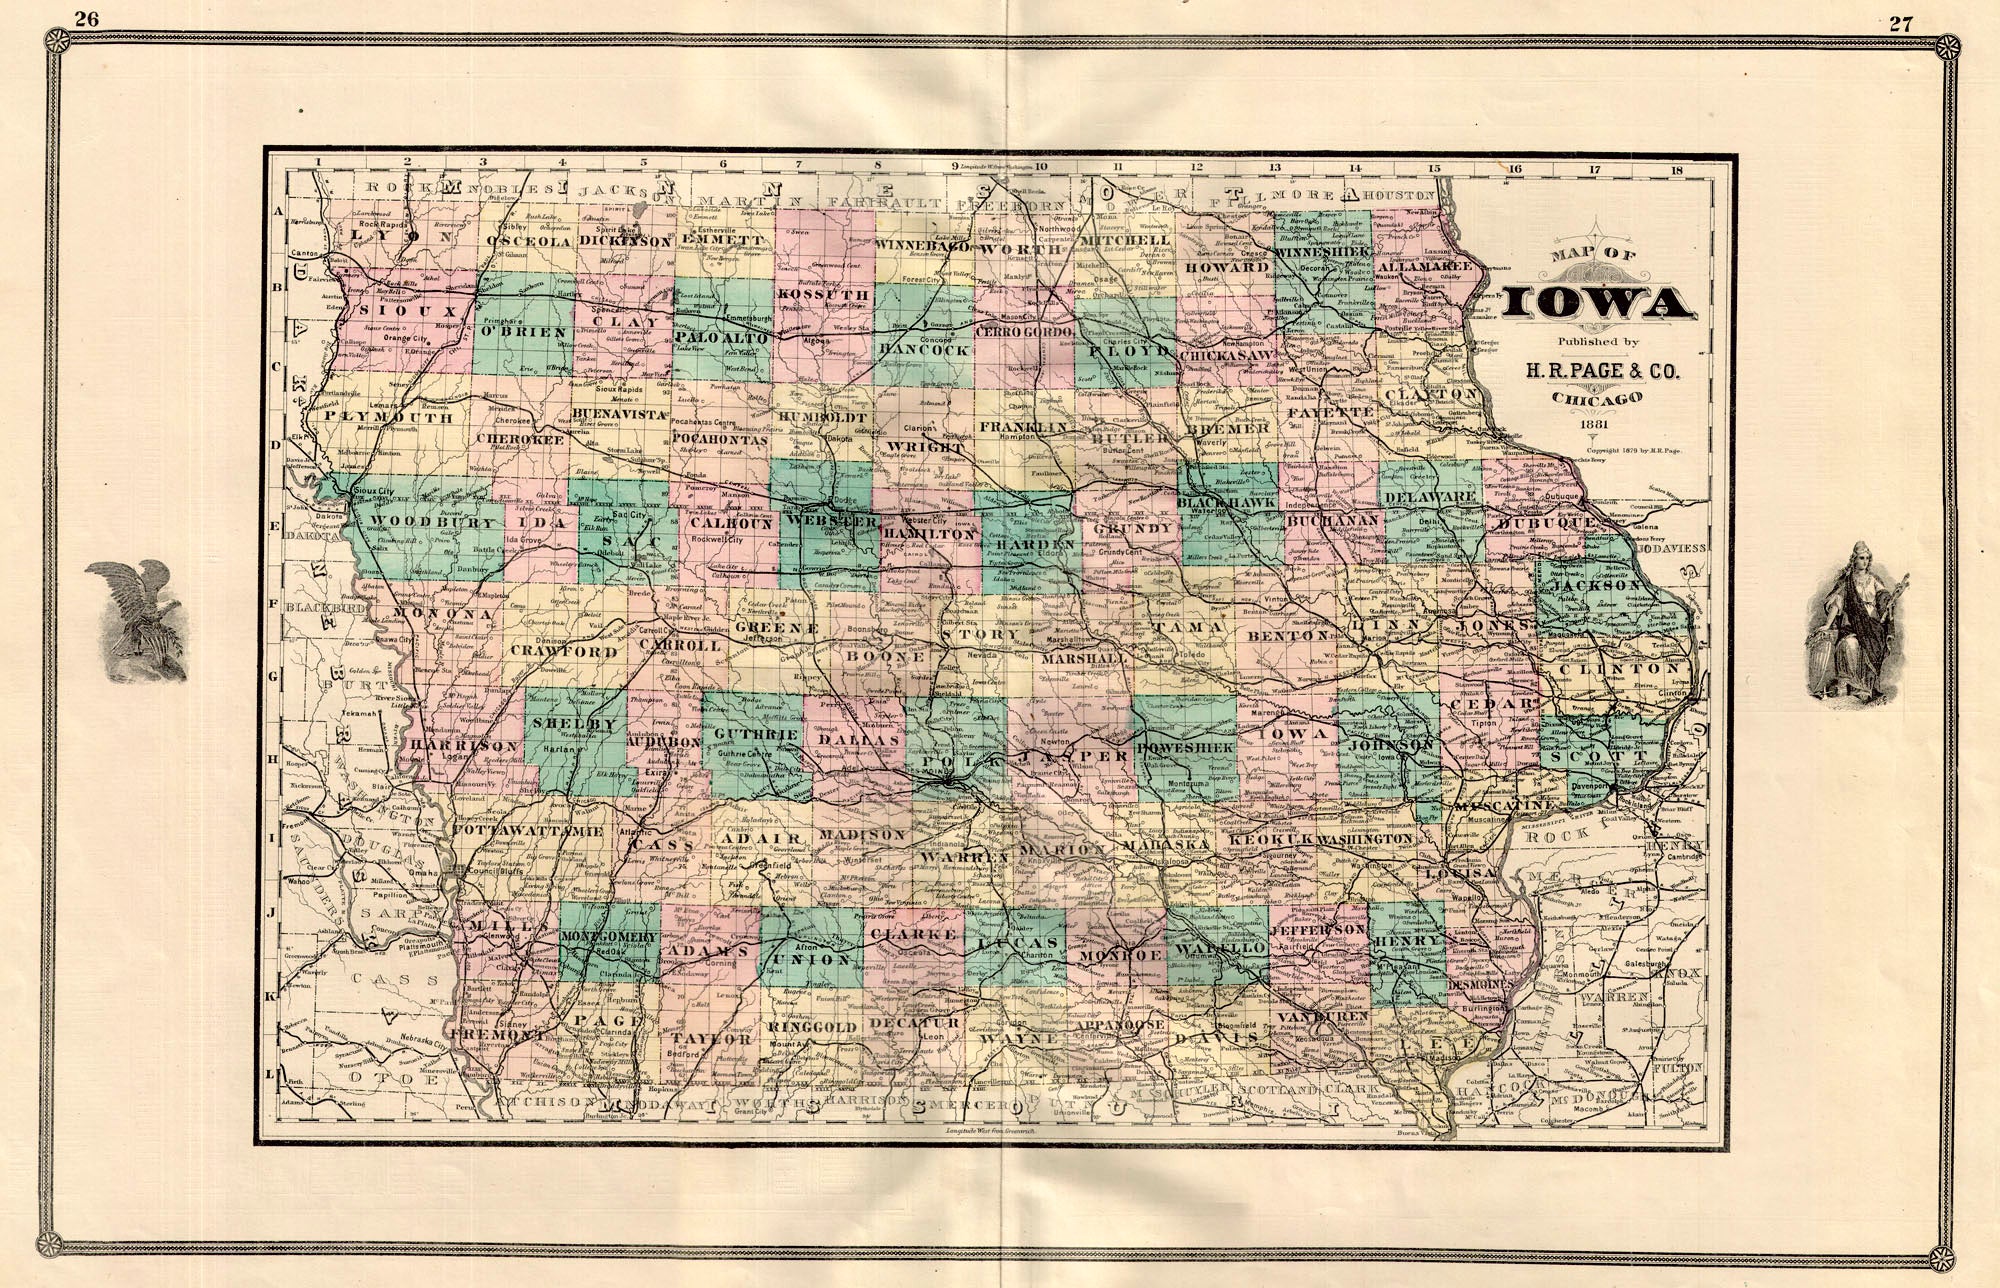 (IA) Map of Iowa